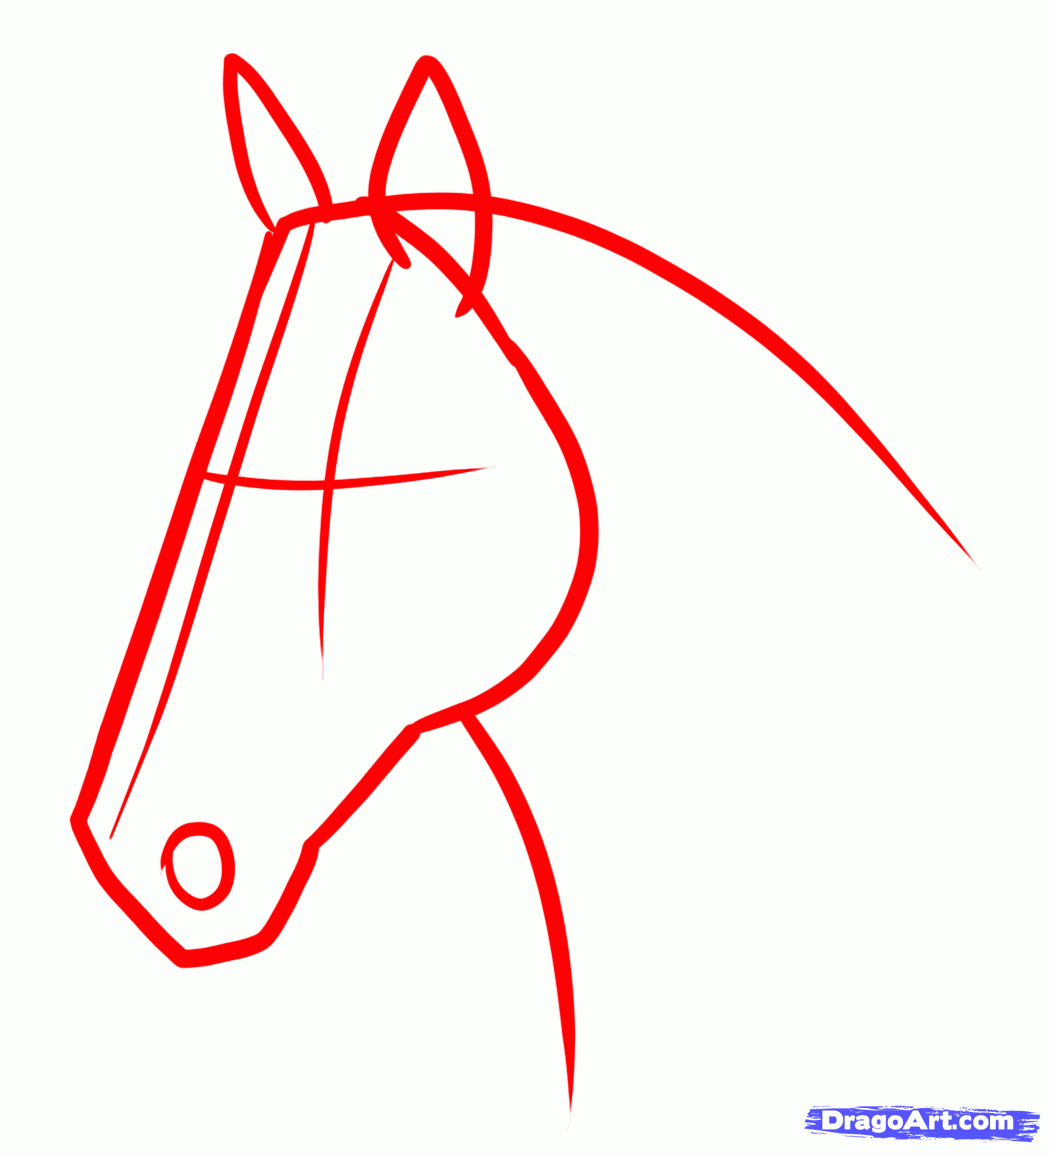 Поэтапное рисование морды лошади